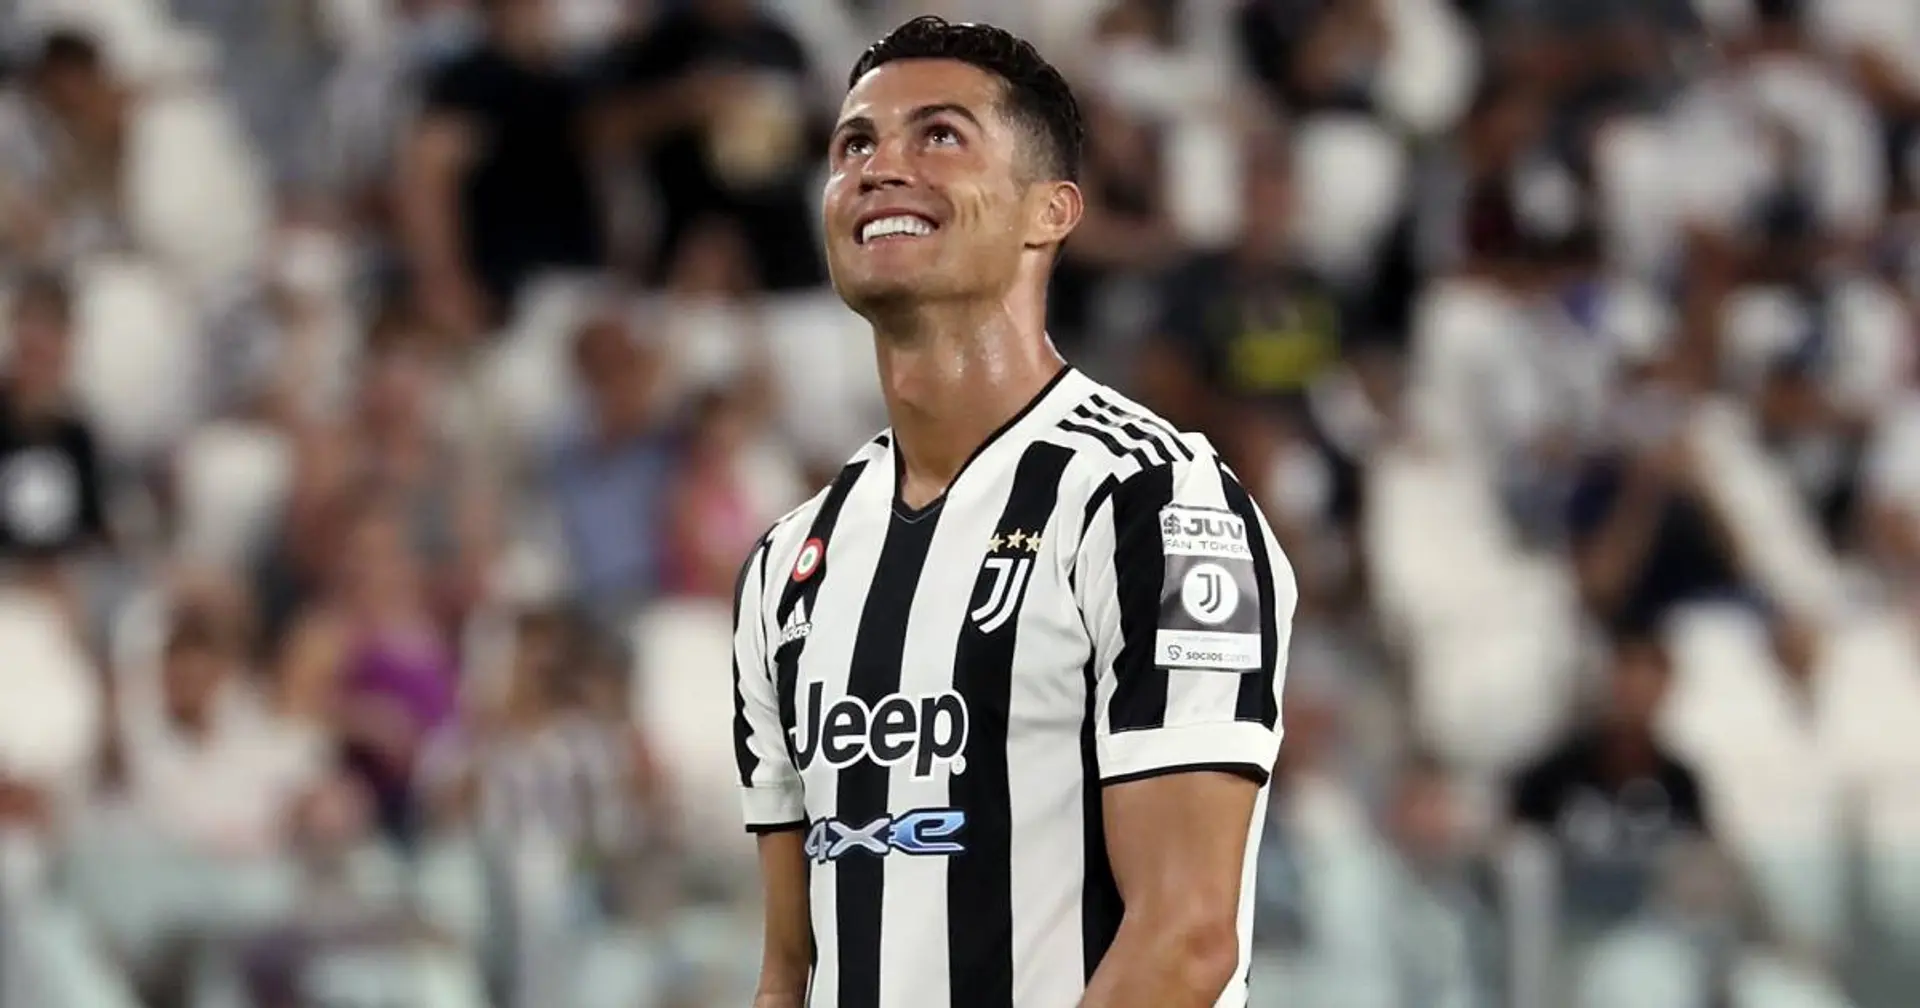 How do you assess Ronaldo's play for Juve?